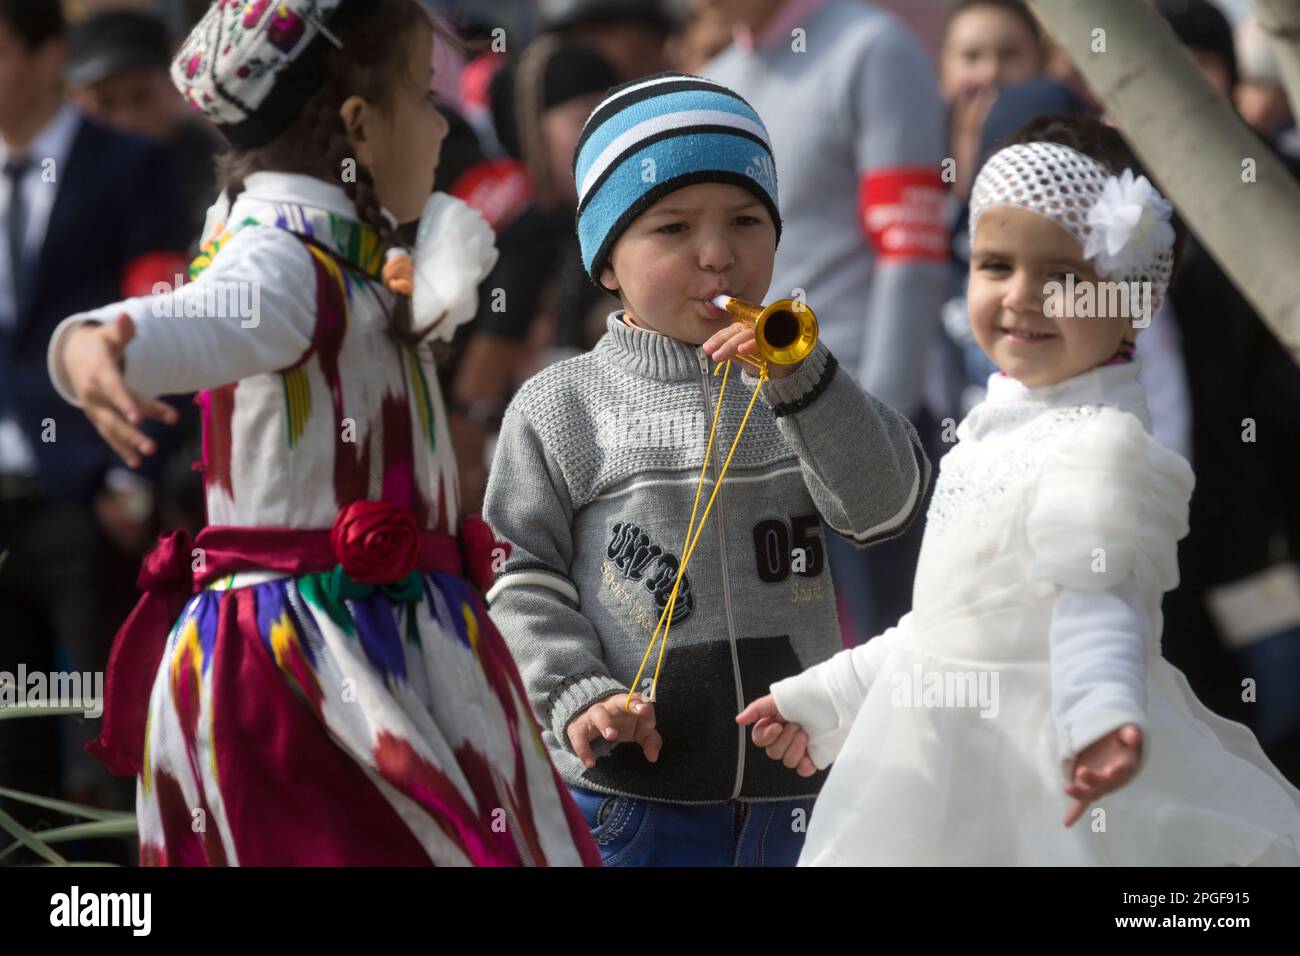 Khujand, Tagikistan. 21st marzo, 2015. I bambini ballano vicino a un palco durante la celebrazione della vacanza Nowruz nel Parco Navruzgoh nella città di Khujand, Repubblica del Tagikistan Foto Stock